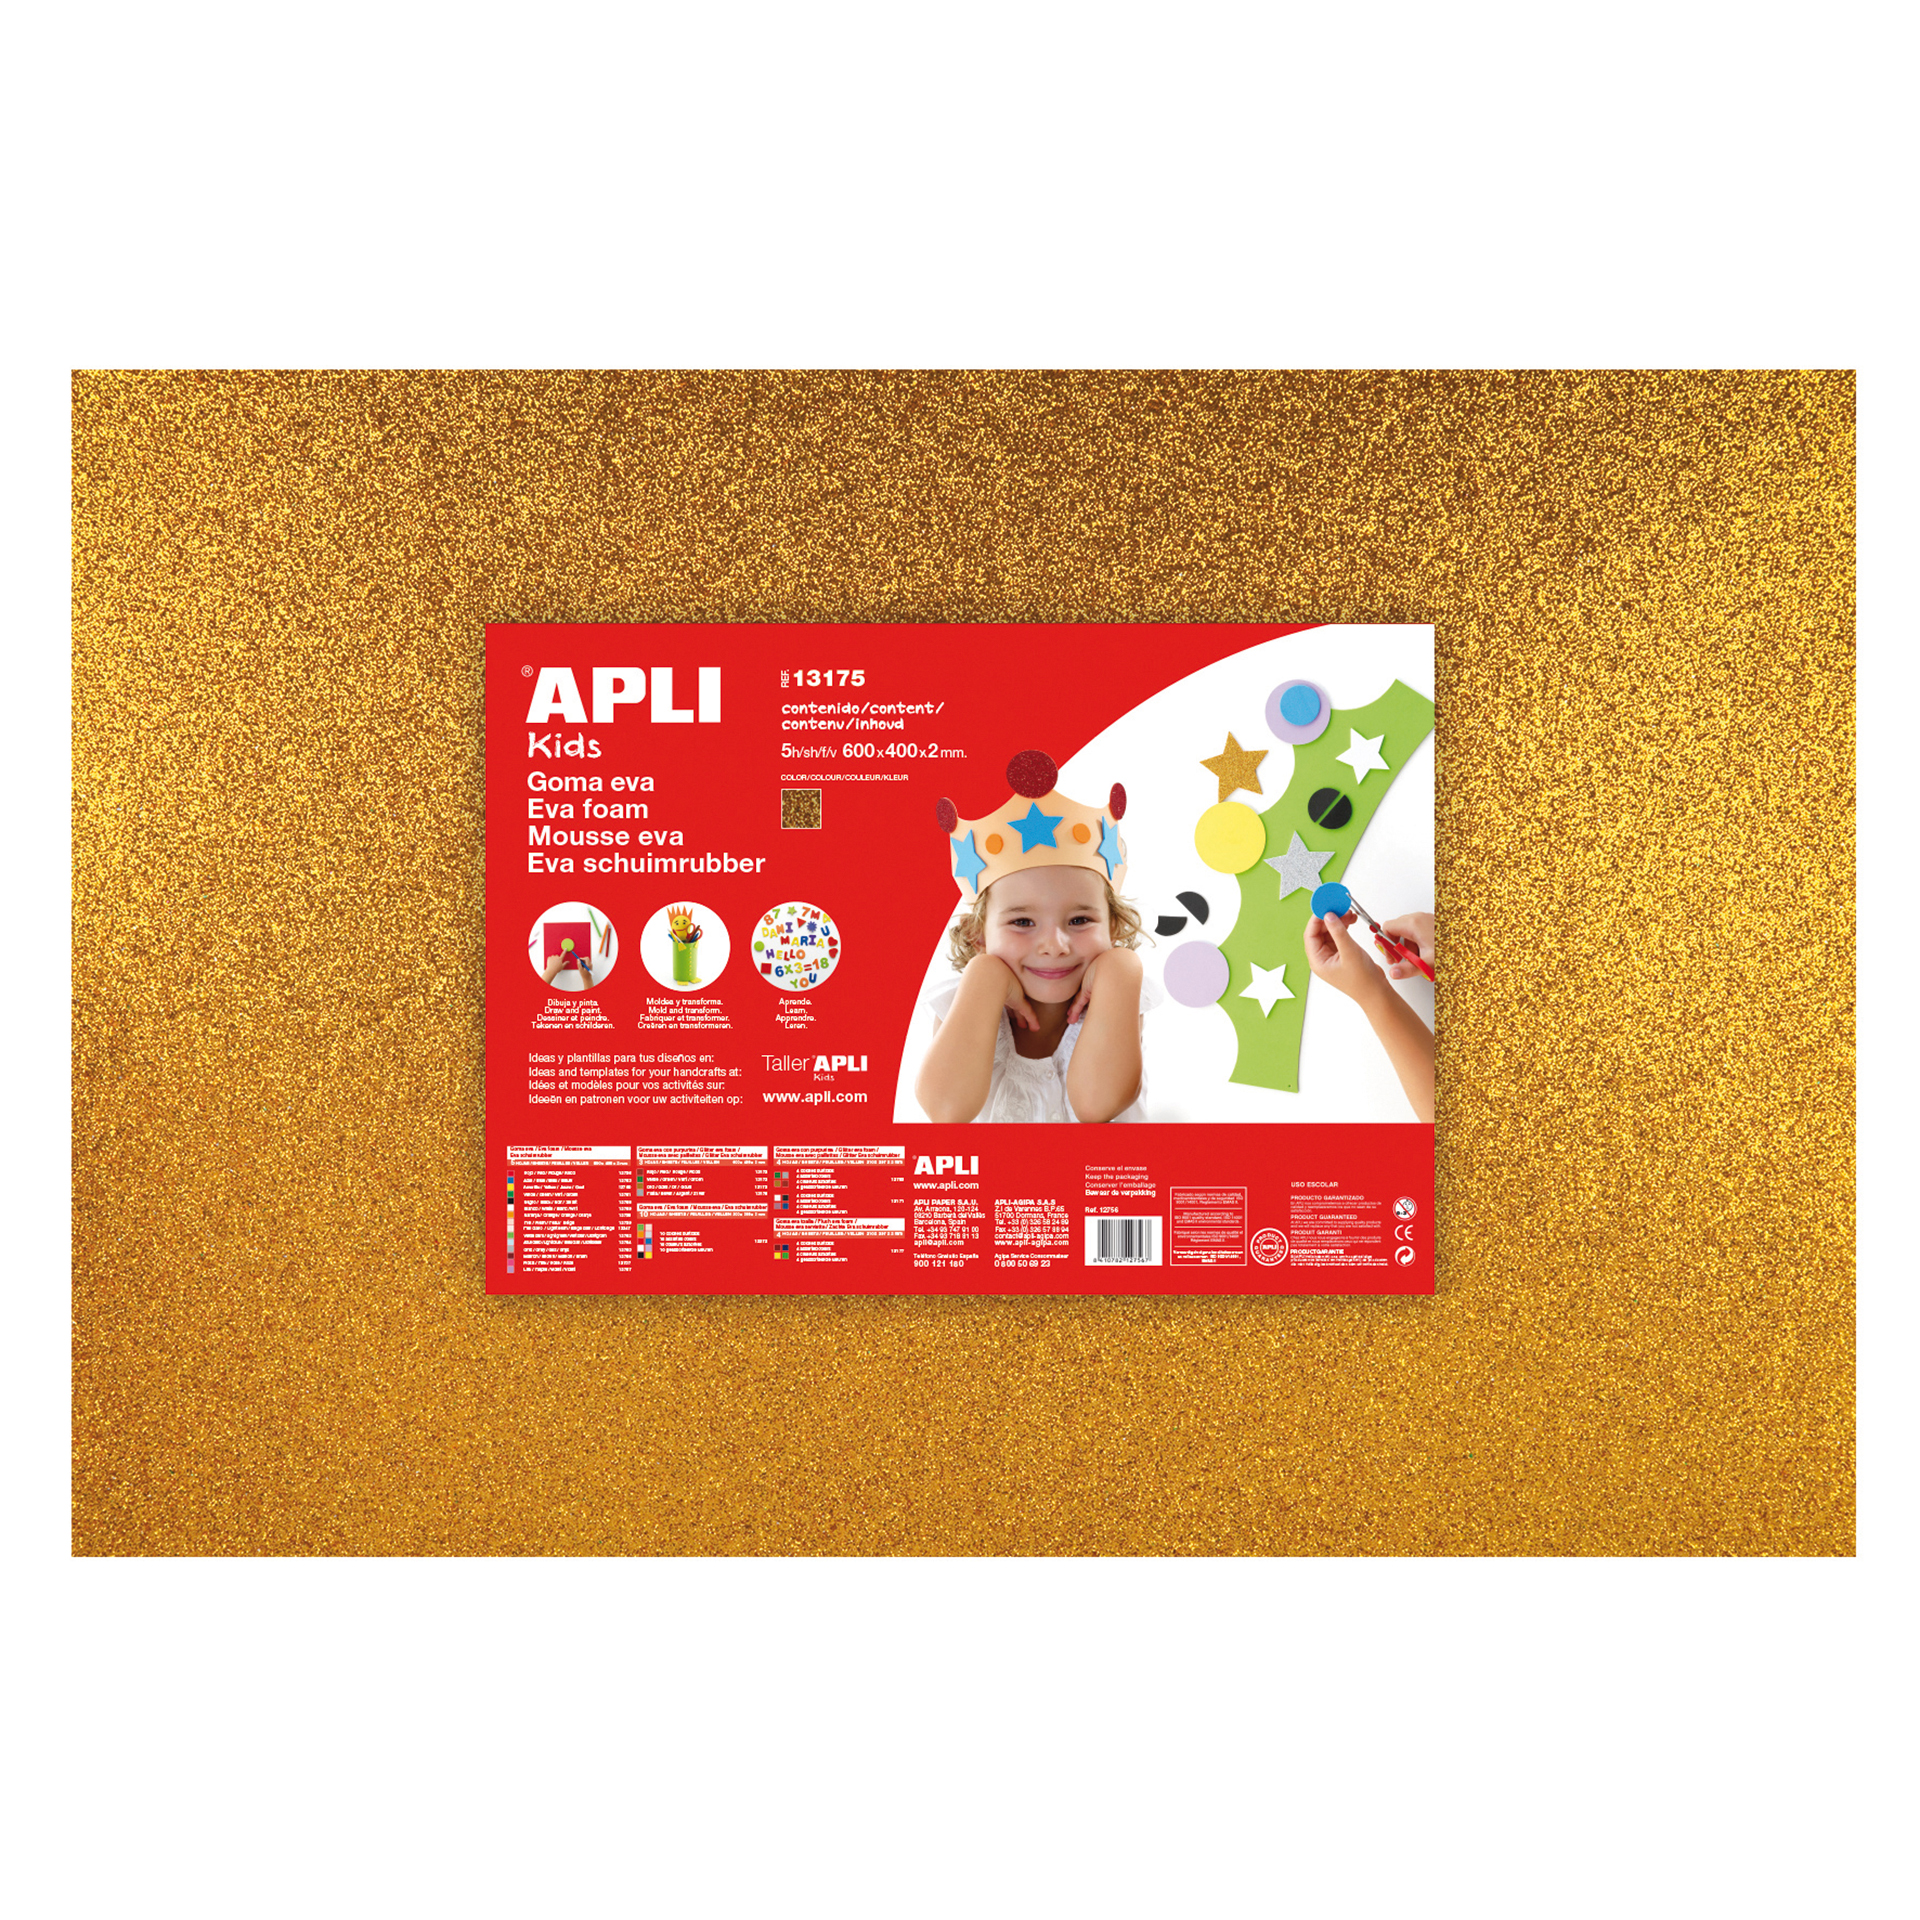 Apli Kids Pack de Manualidades con Pompones, Formas de Goma EVA, Piedras  Fantasia Adhesivas, Lentejuelas, Palos